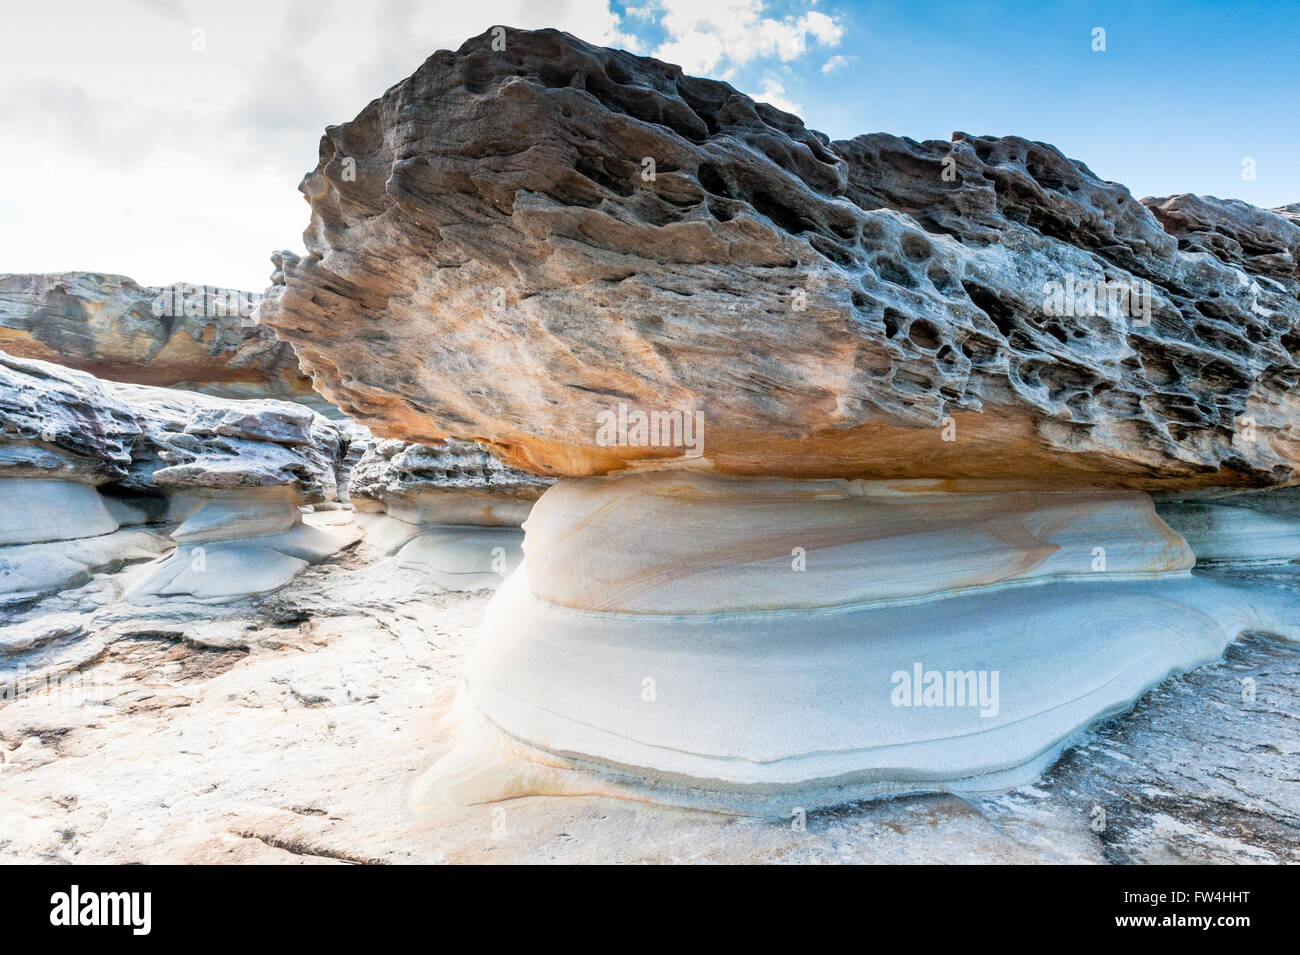 Formaciones de roca erosionada por el viento y el agua a lo largo de la bondi de Coogee acantilado costero en los suburbios del este de Sydney Australia. Foto de stock